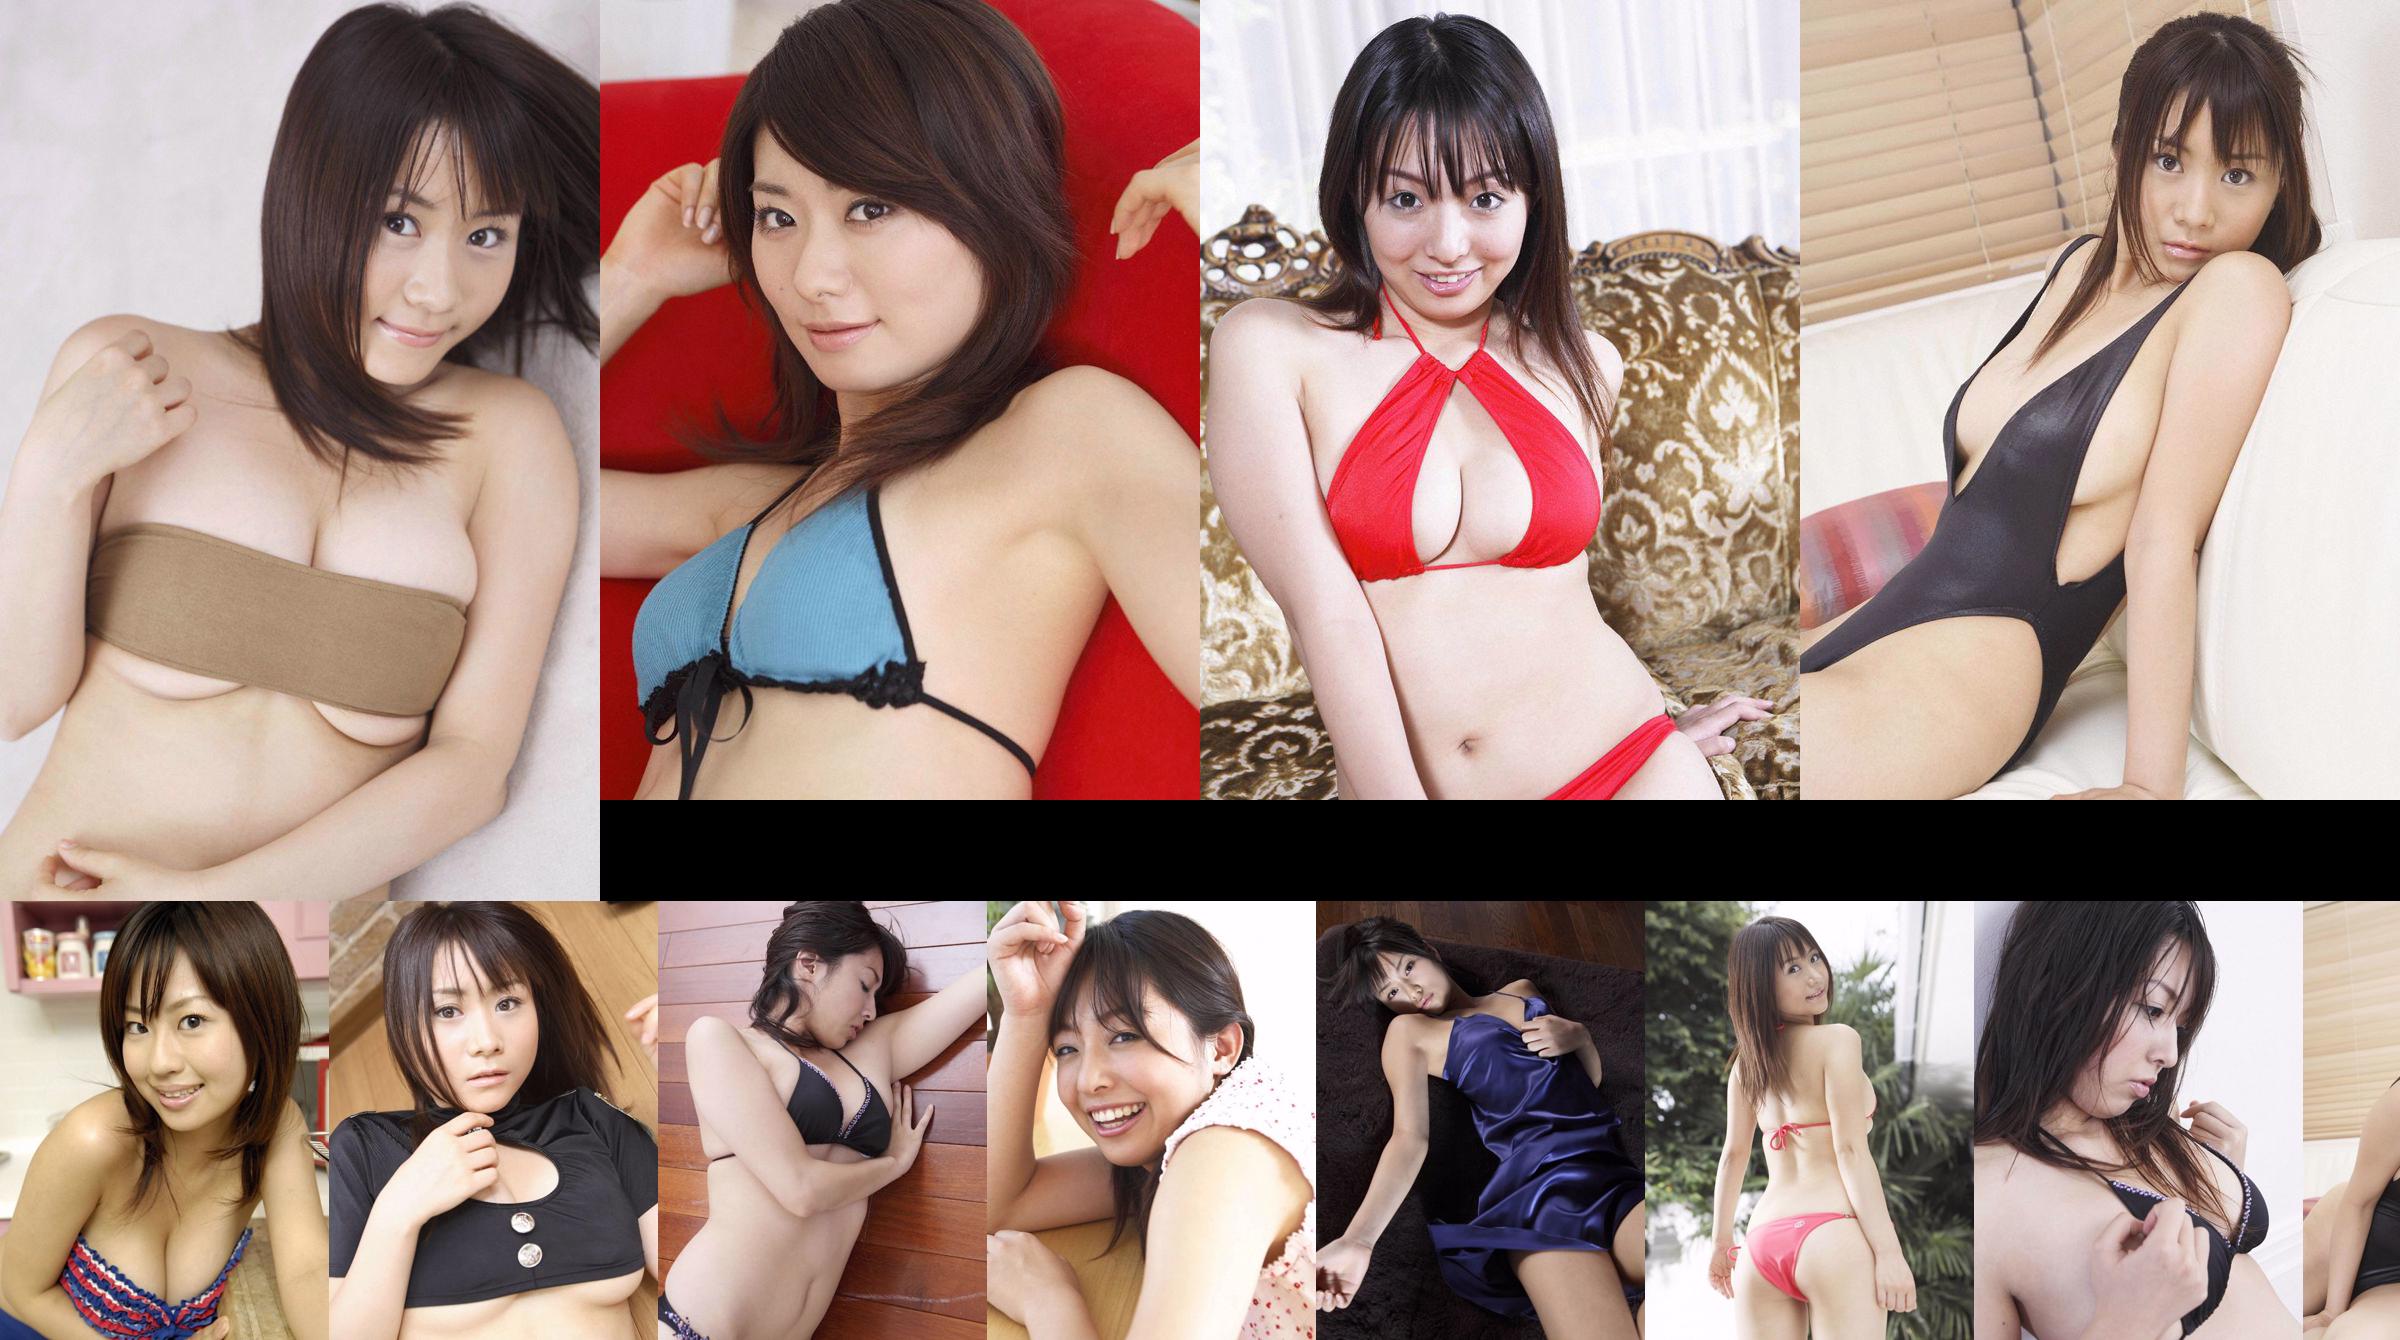 [Wanibooks] NO.37 Ai Arakawa, Hitomi Kaikawa, Hitomi Kitamura, Naomi I, Chii Matsuda Photo Collection No.a3bbc7 Trang 2